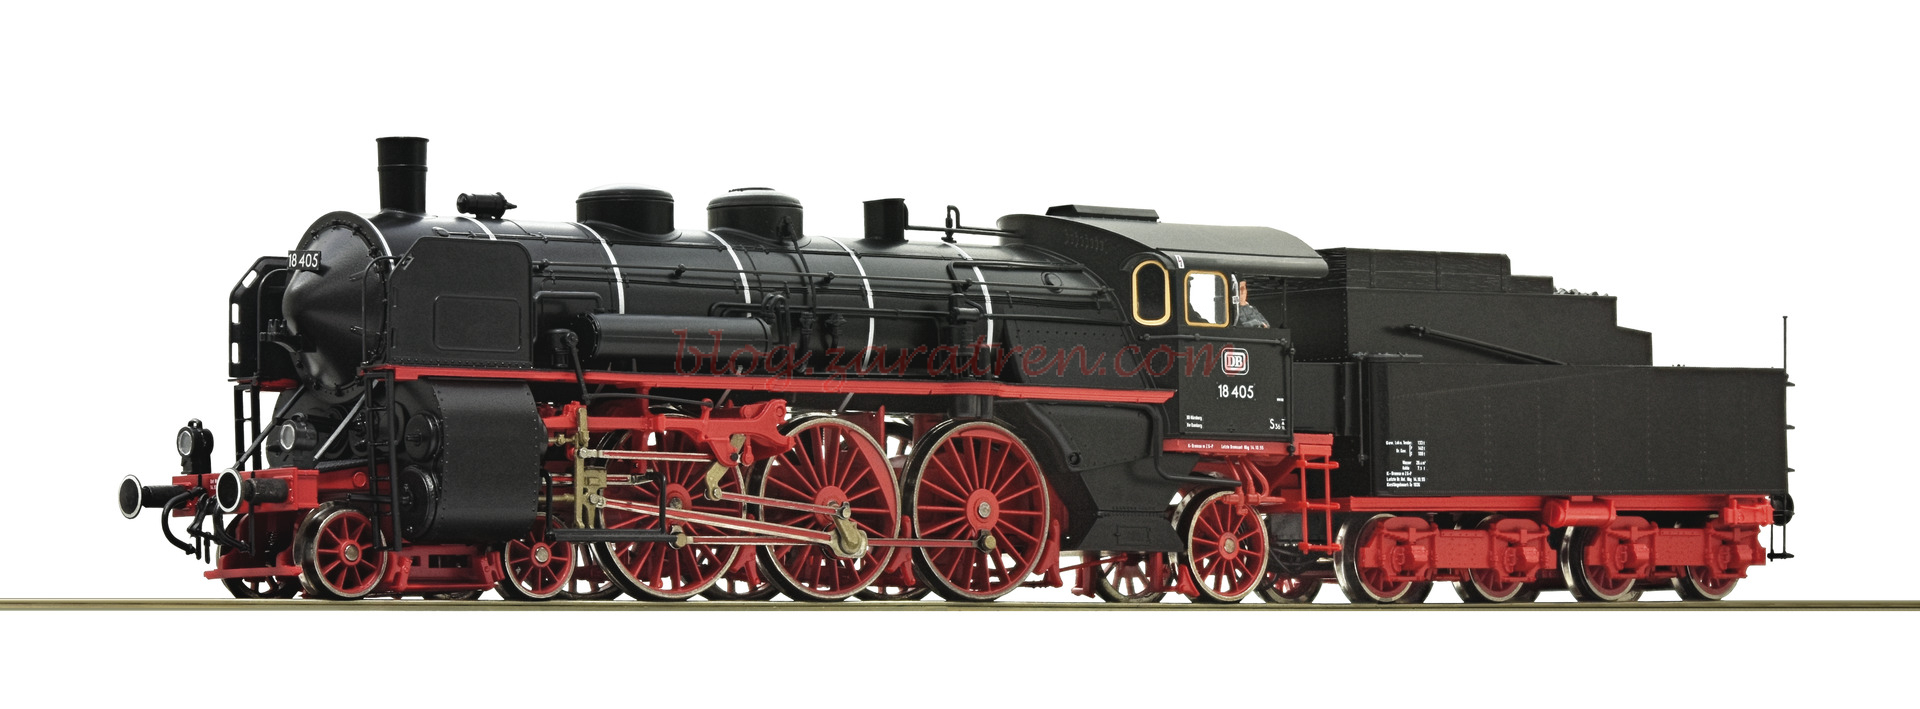 Roco – Locomotora de Vapor Clase 18., 18 405, DB, Epoca III, D. Sonido, Escala H0. Ref: 72249.